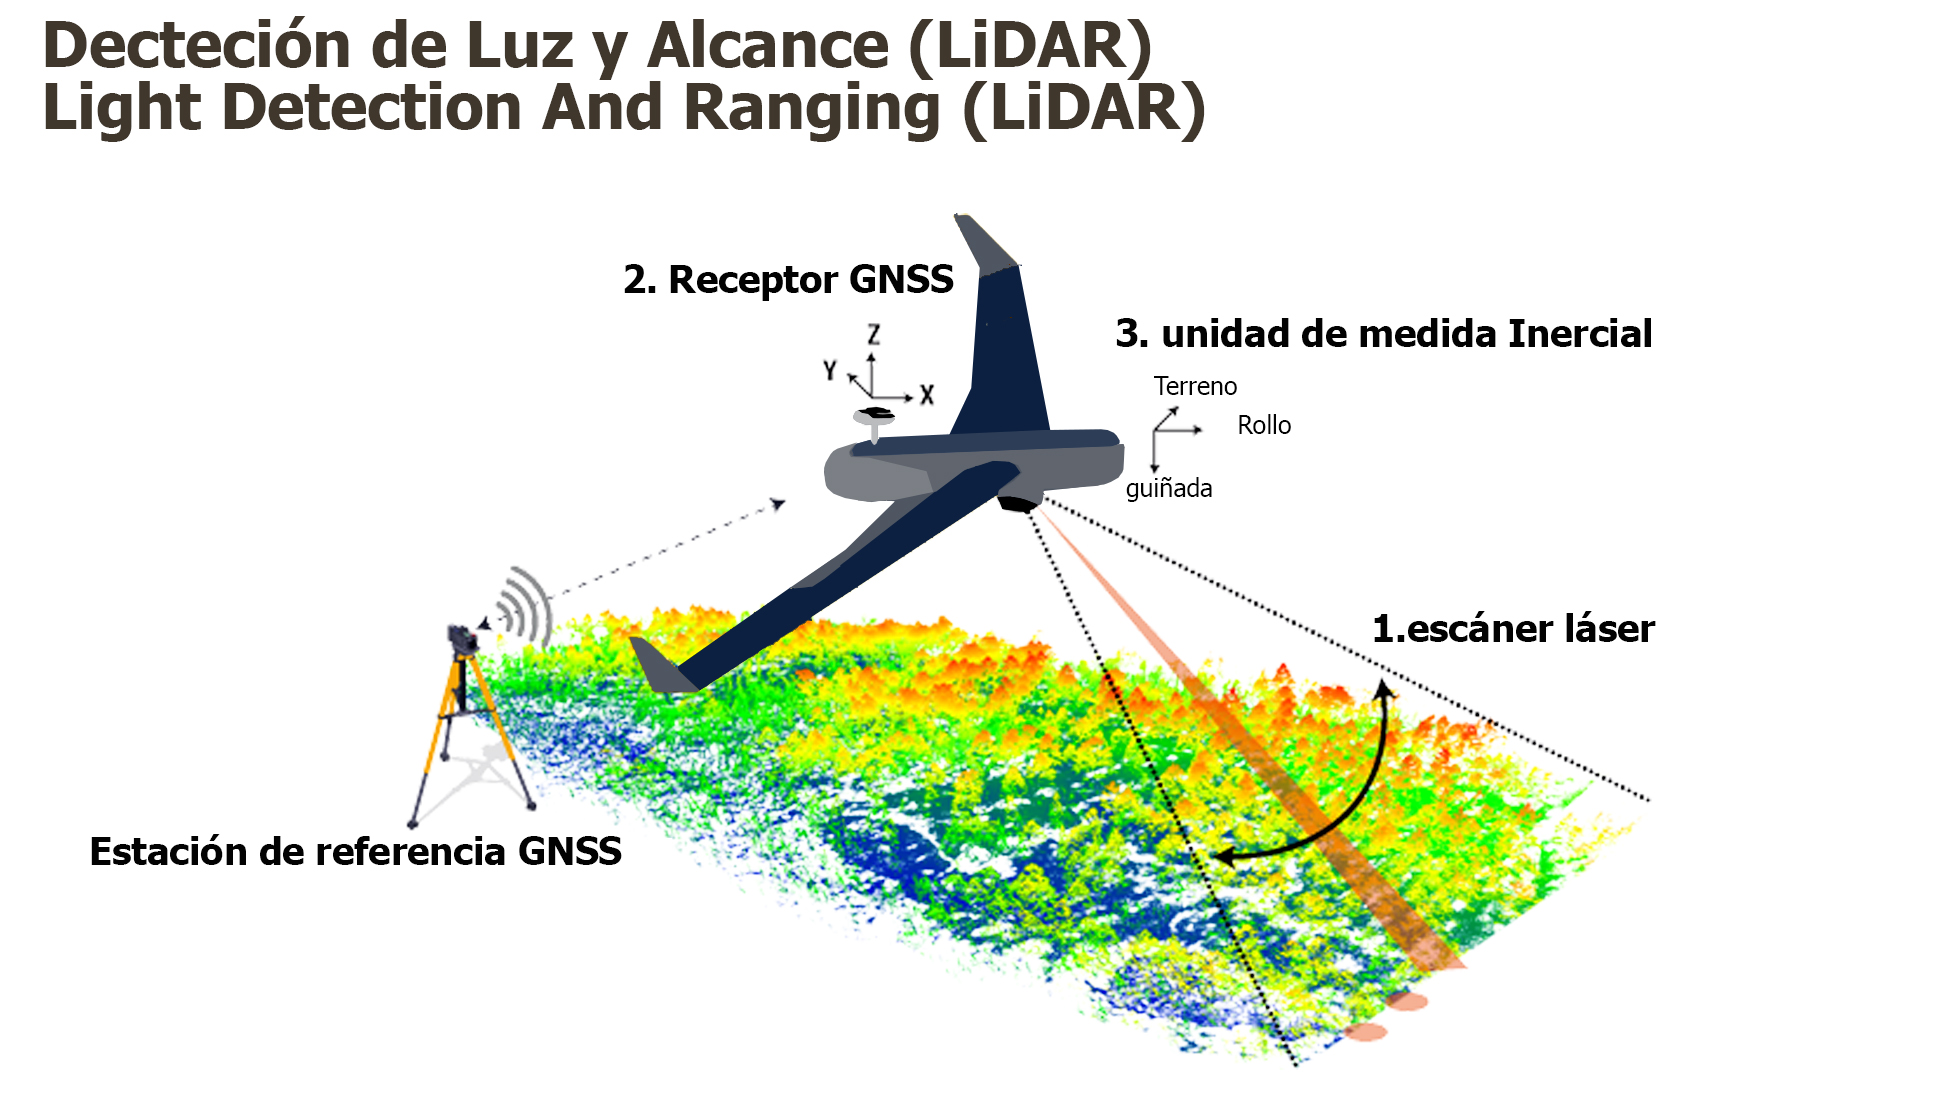 تكشف تقنية الليزر LiDAR عن استثنائية المياه الجوفية في “حوض Mirador-Calakmul” في غواتيمالا